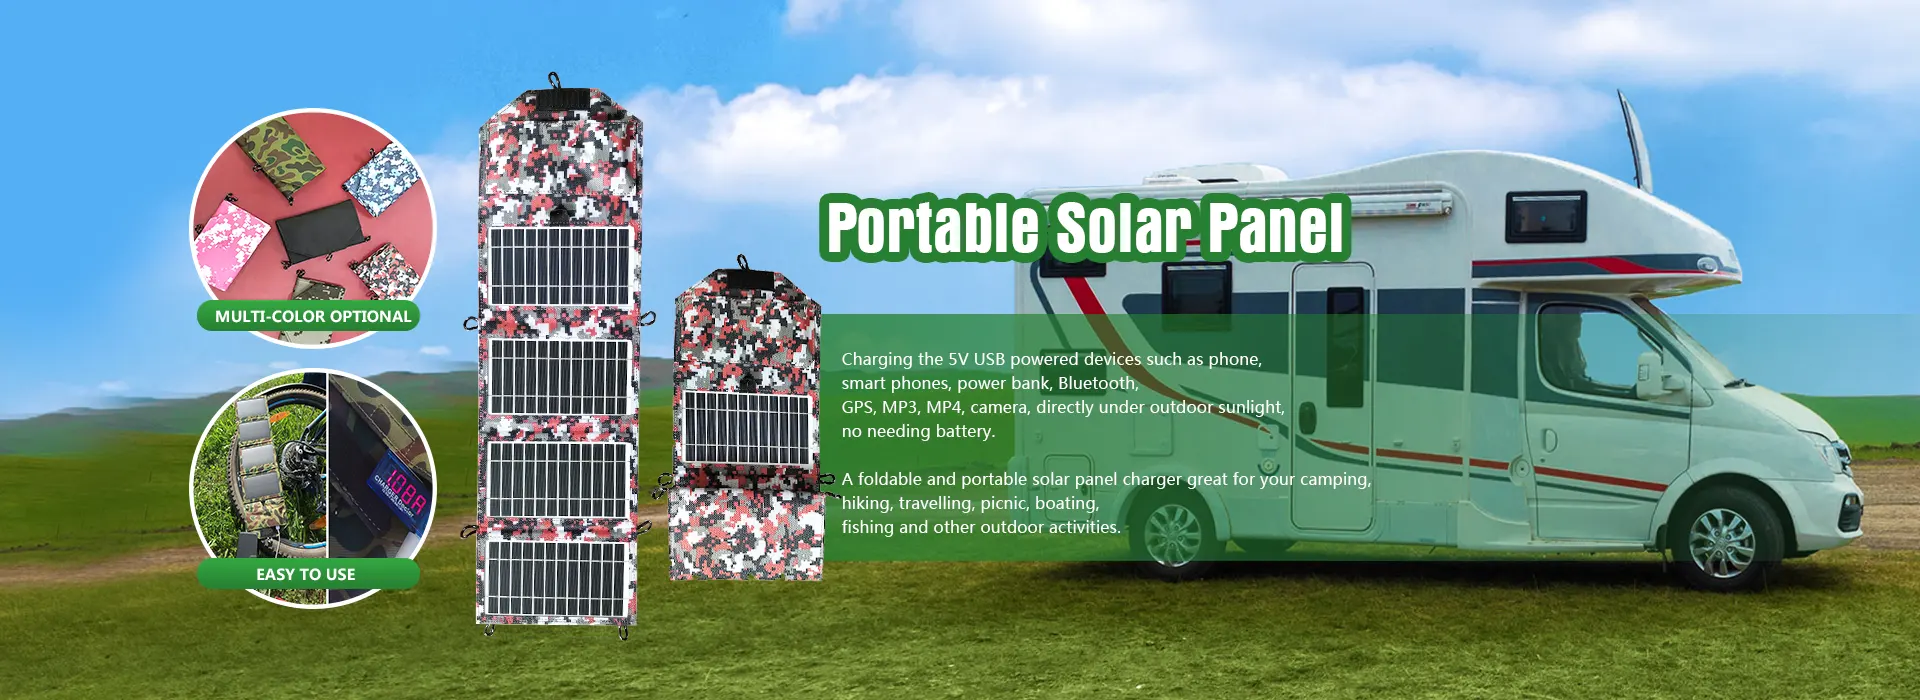 Fabricantes de painéis solares portáteis